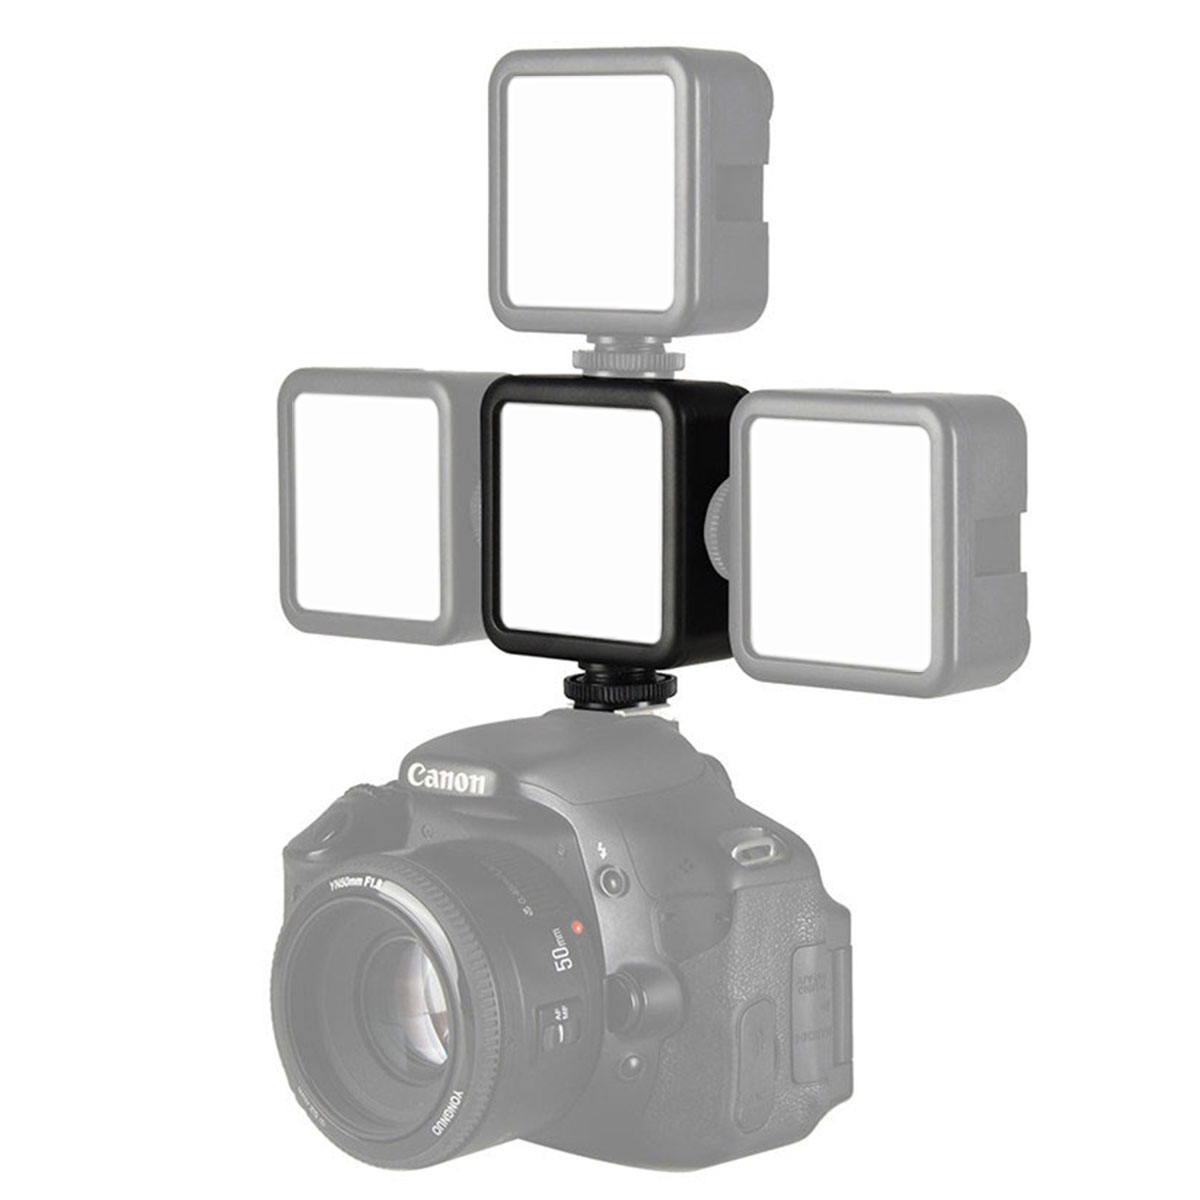 

ULANZI VL49 Video Светодиодный 5500K Встроенный Батарея LED Video Light with Cold Shoe для зеркальных фотокамер смартфонов